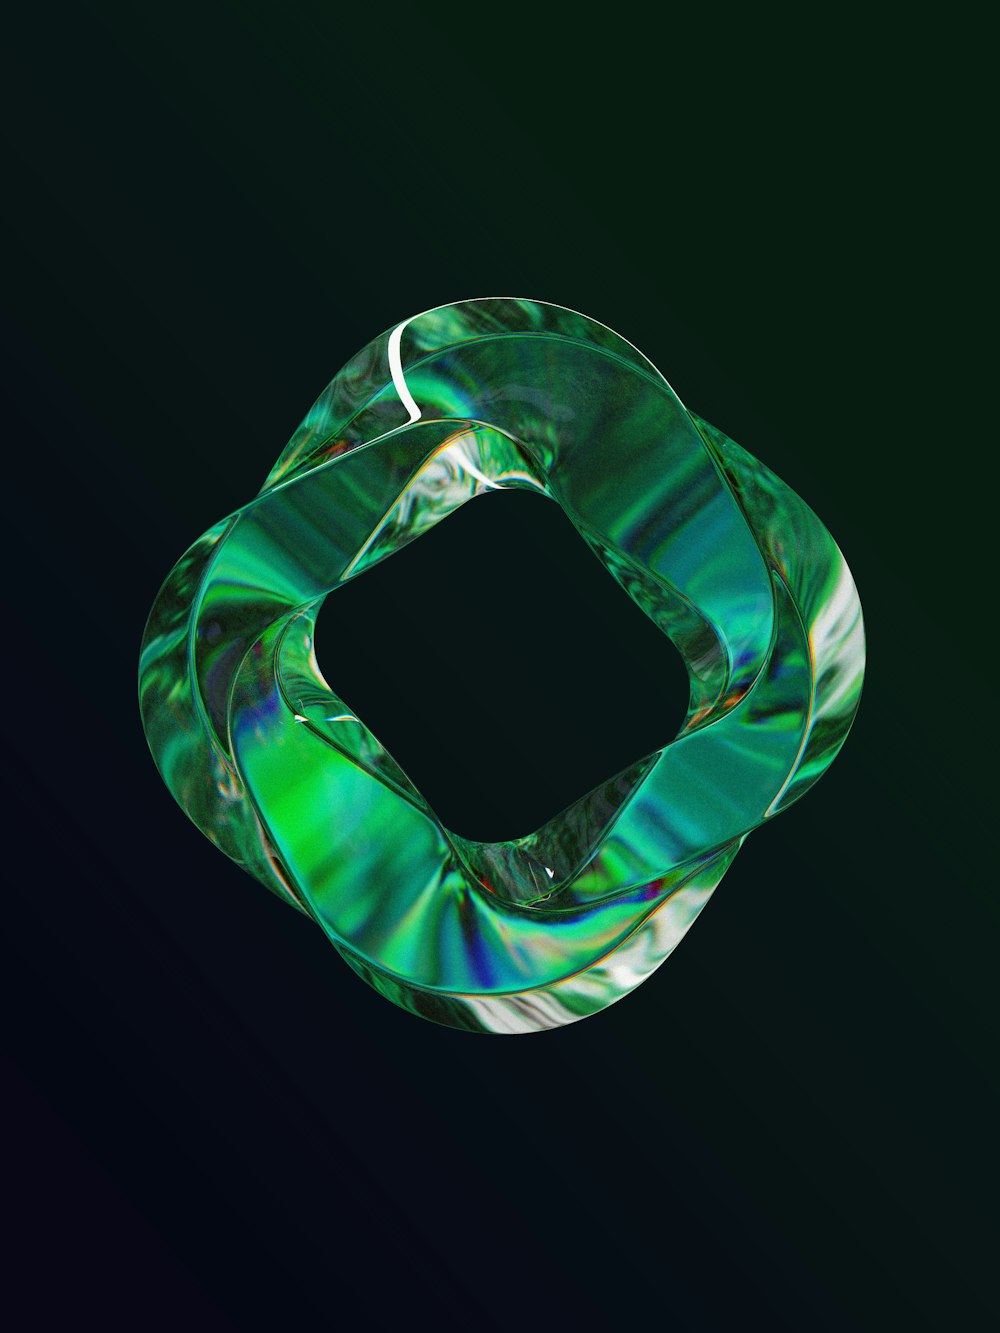 Un objeto verde y blanco sobre un fondo negro